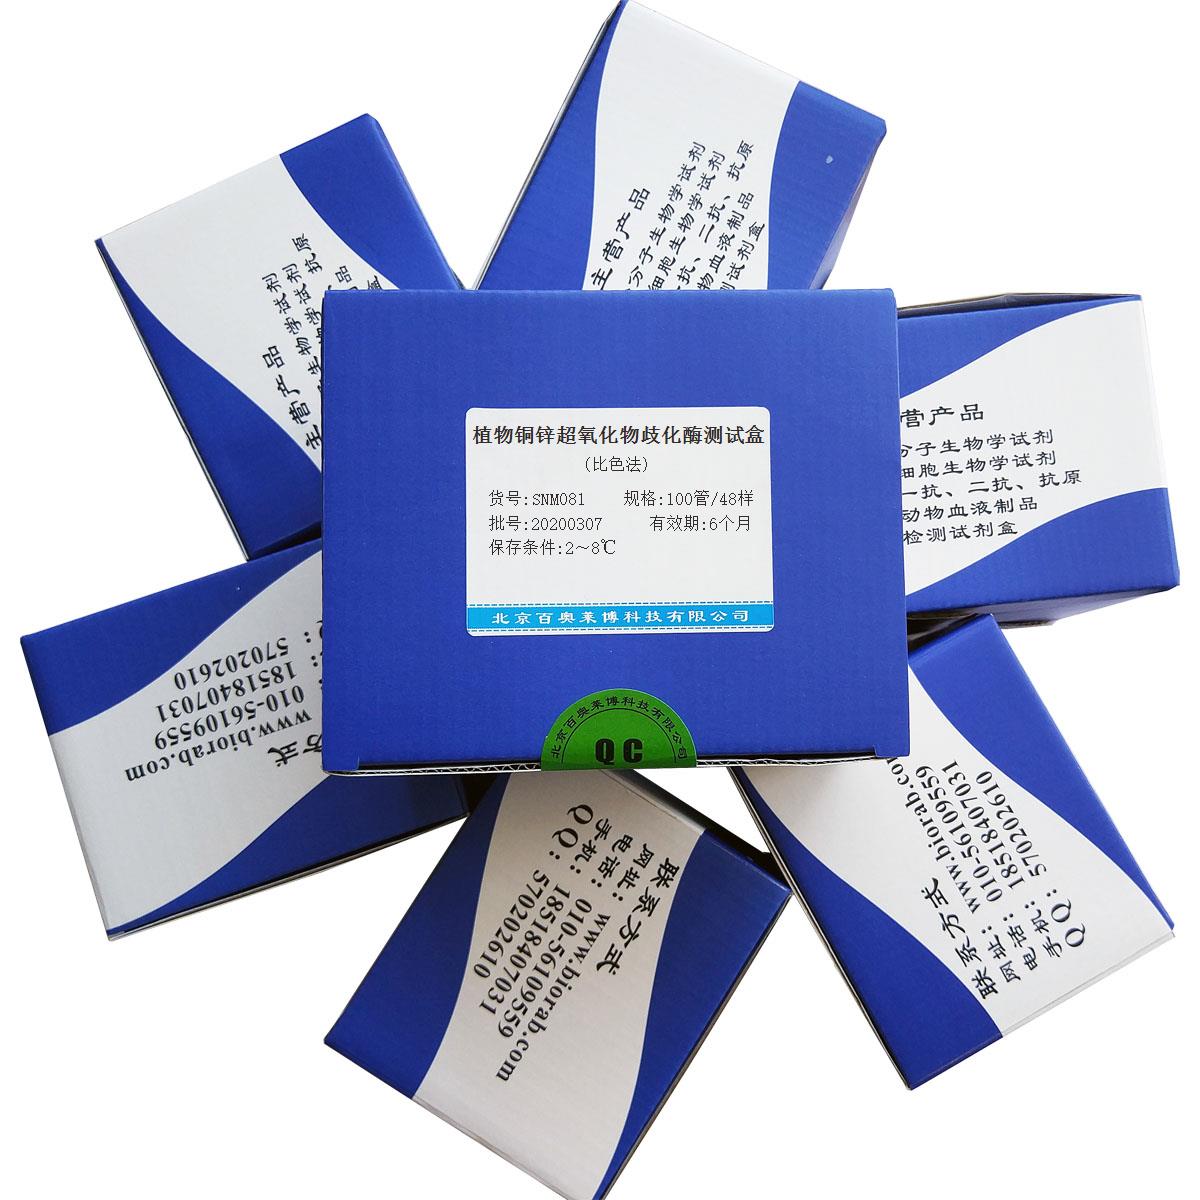 植物铜锌超氧化物歧化酶测试盒(比色法)北京厂家